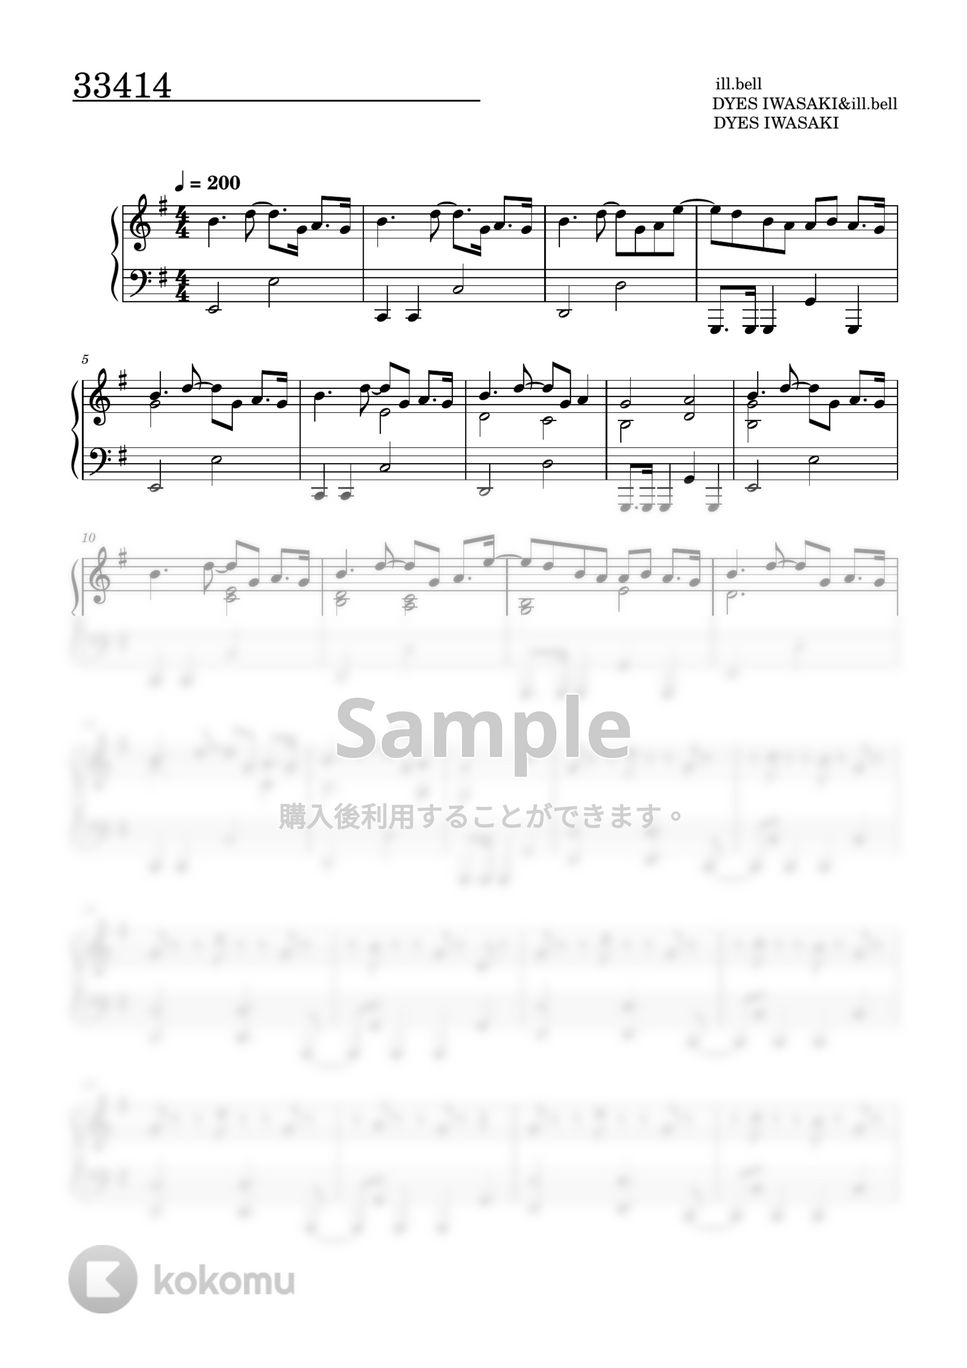 すとぷり - 33414 (ピアノソロ譜) by 萌や氏